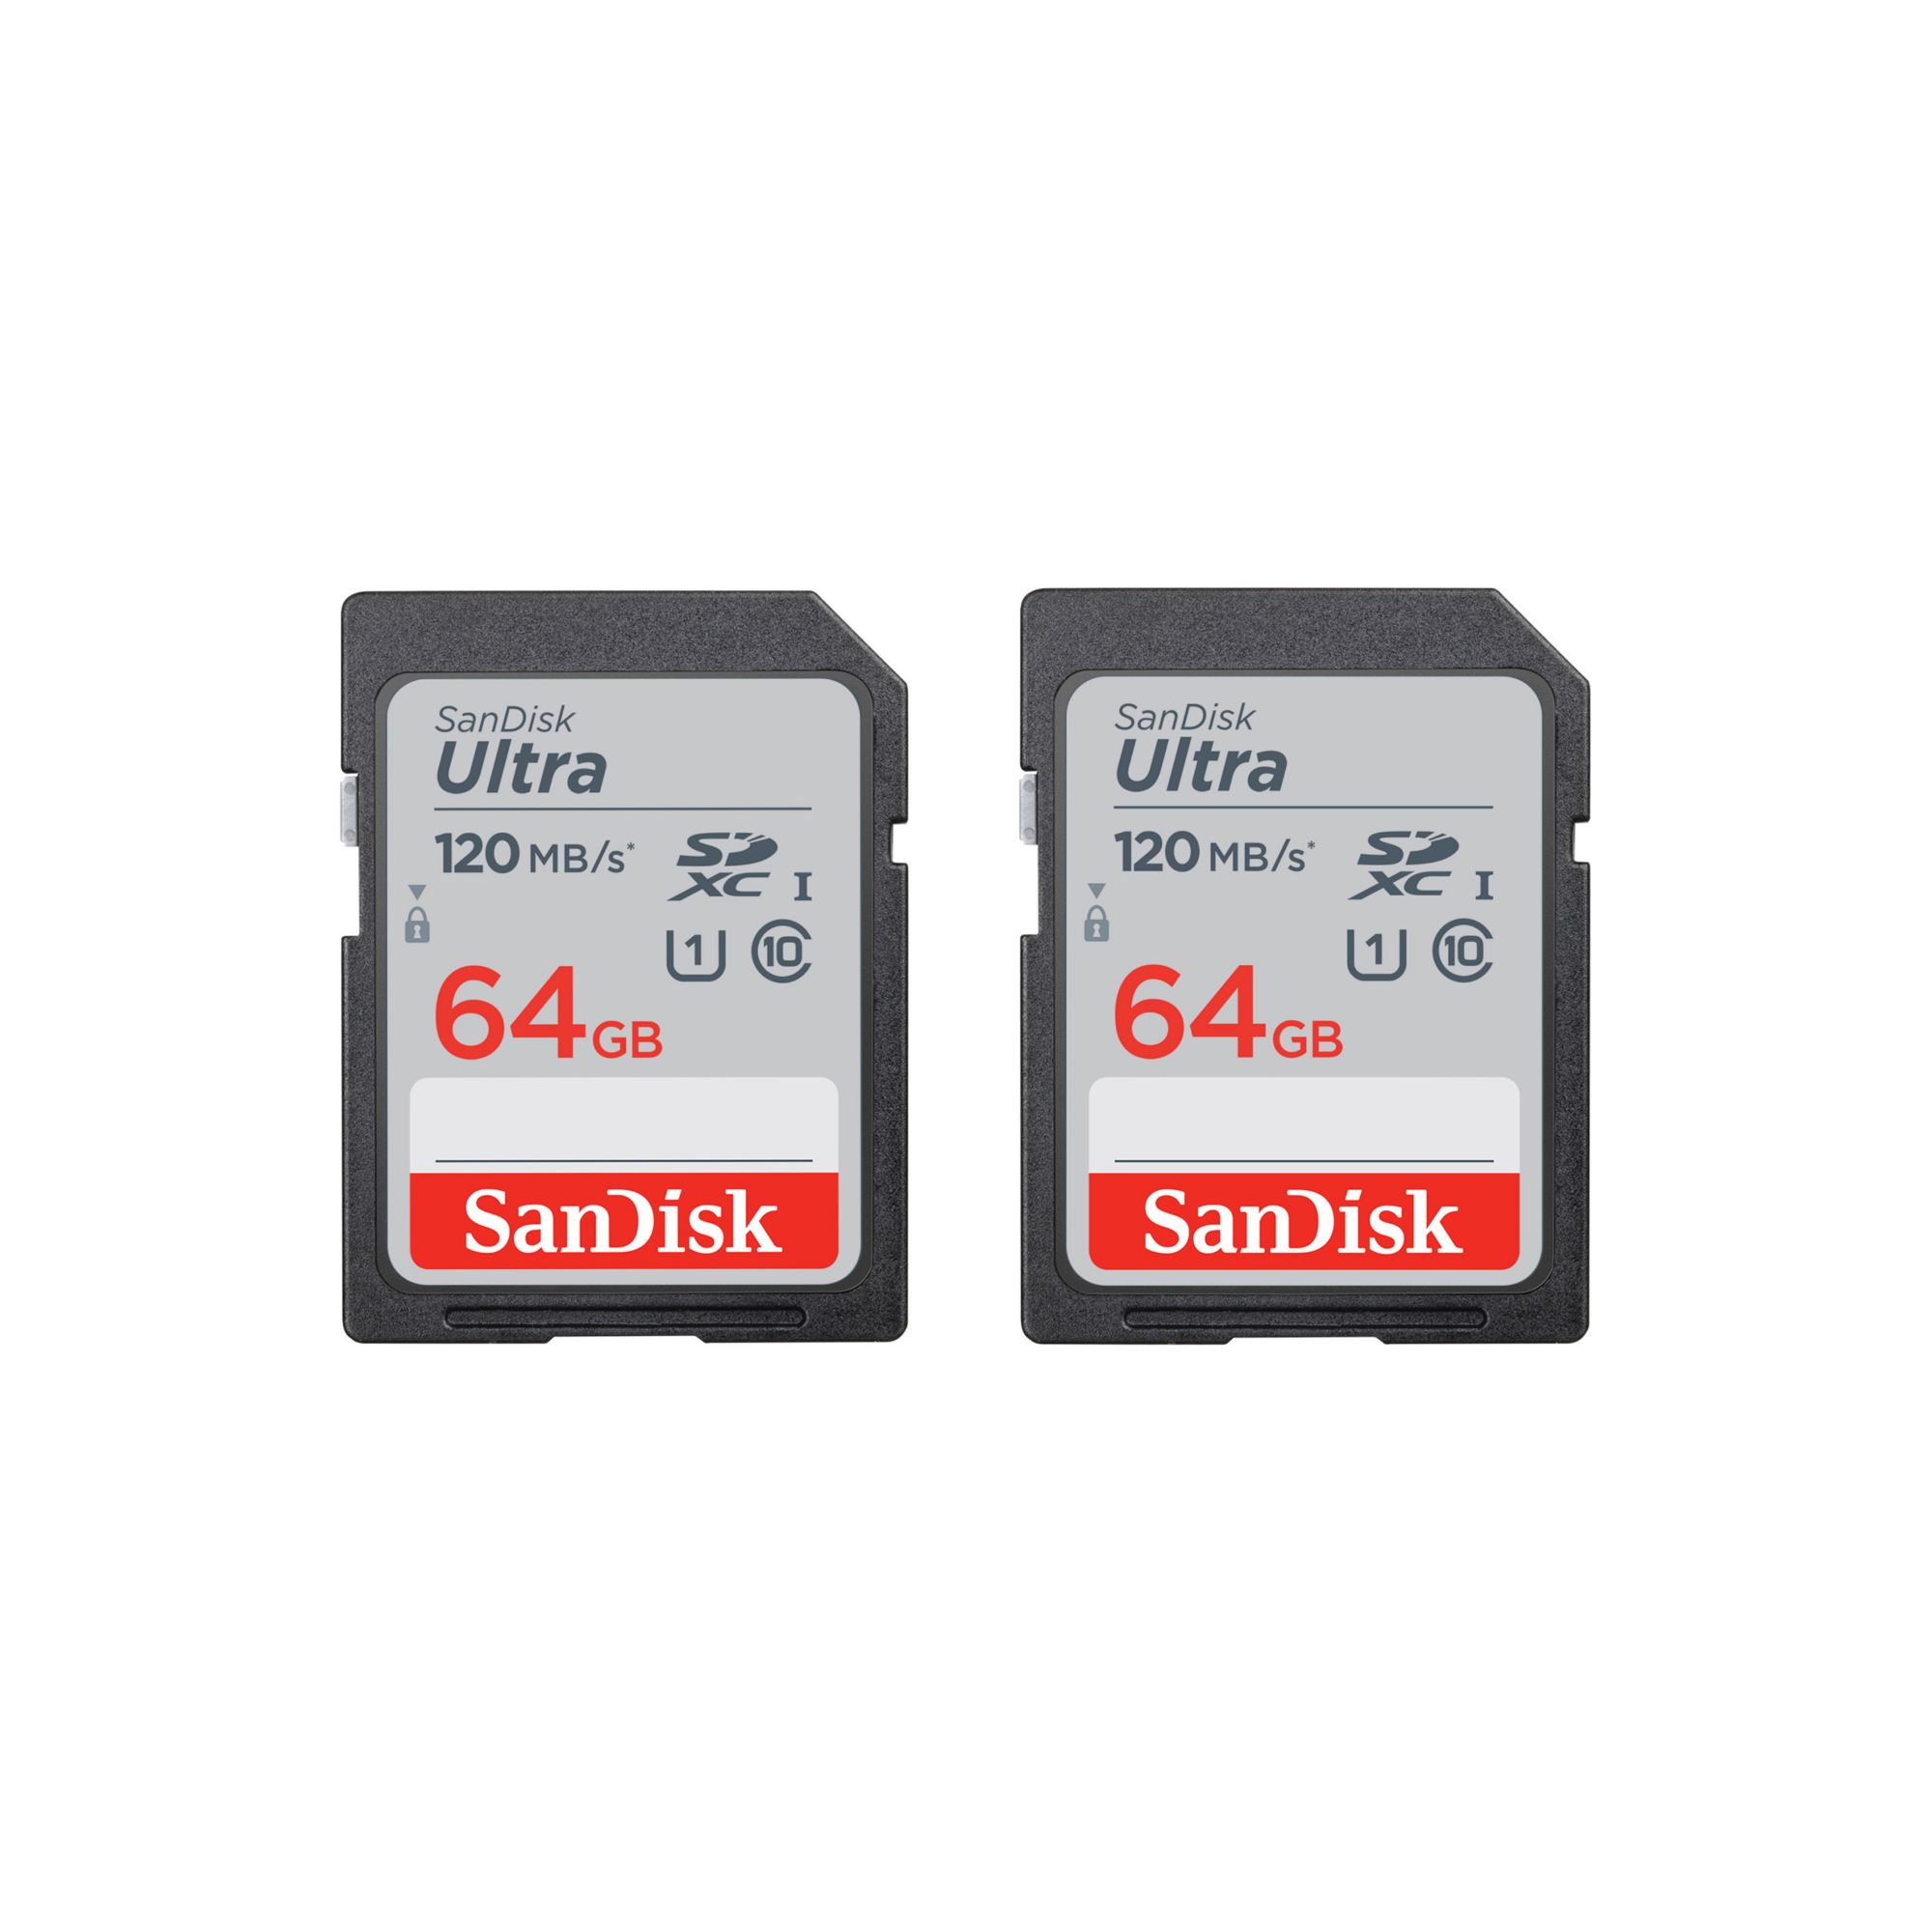 SDCZ48-032G-G462  SanDisk Clé USB, lot de 2, Ultra, 32GB, USB 3.0